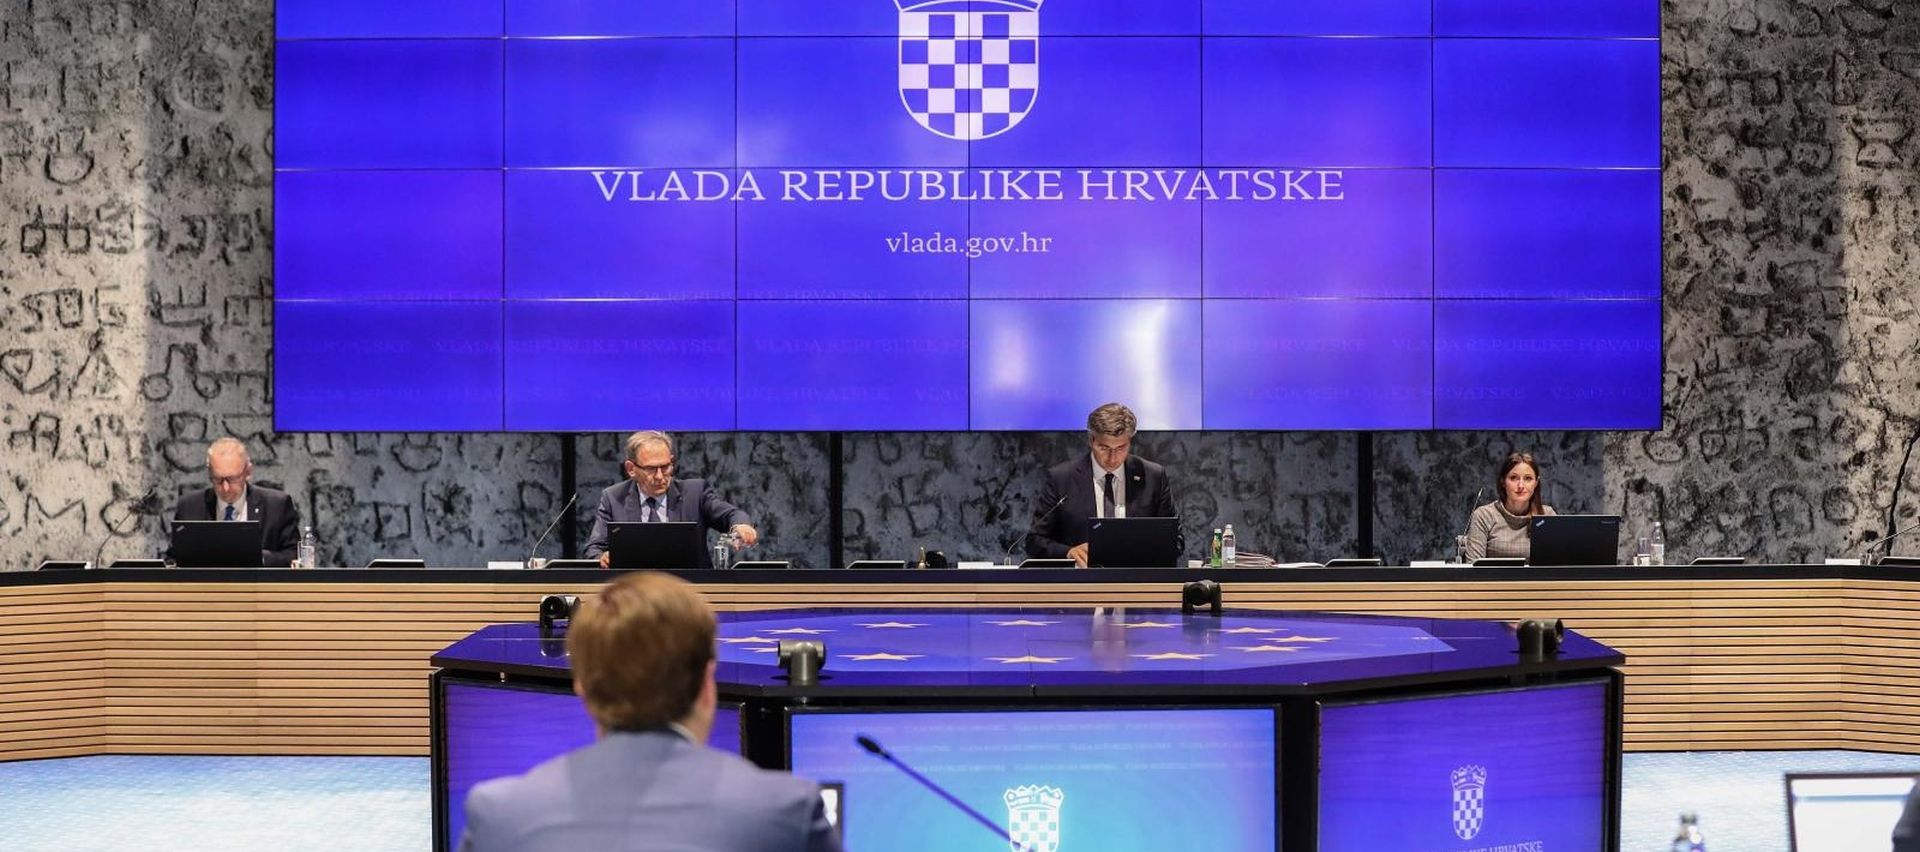 21.05.2020,Zagreb - Sjednica Vlade RH odrzana je u plenarnoj dvorani NSK.
Photo: Jurica Galoic/PIXSELL